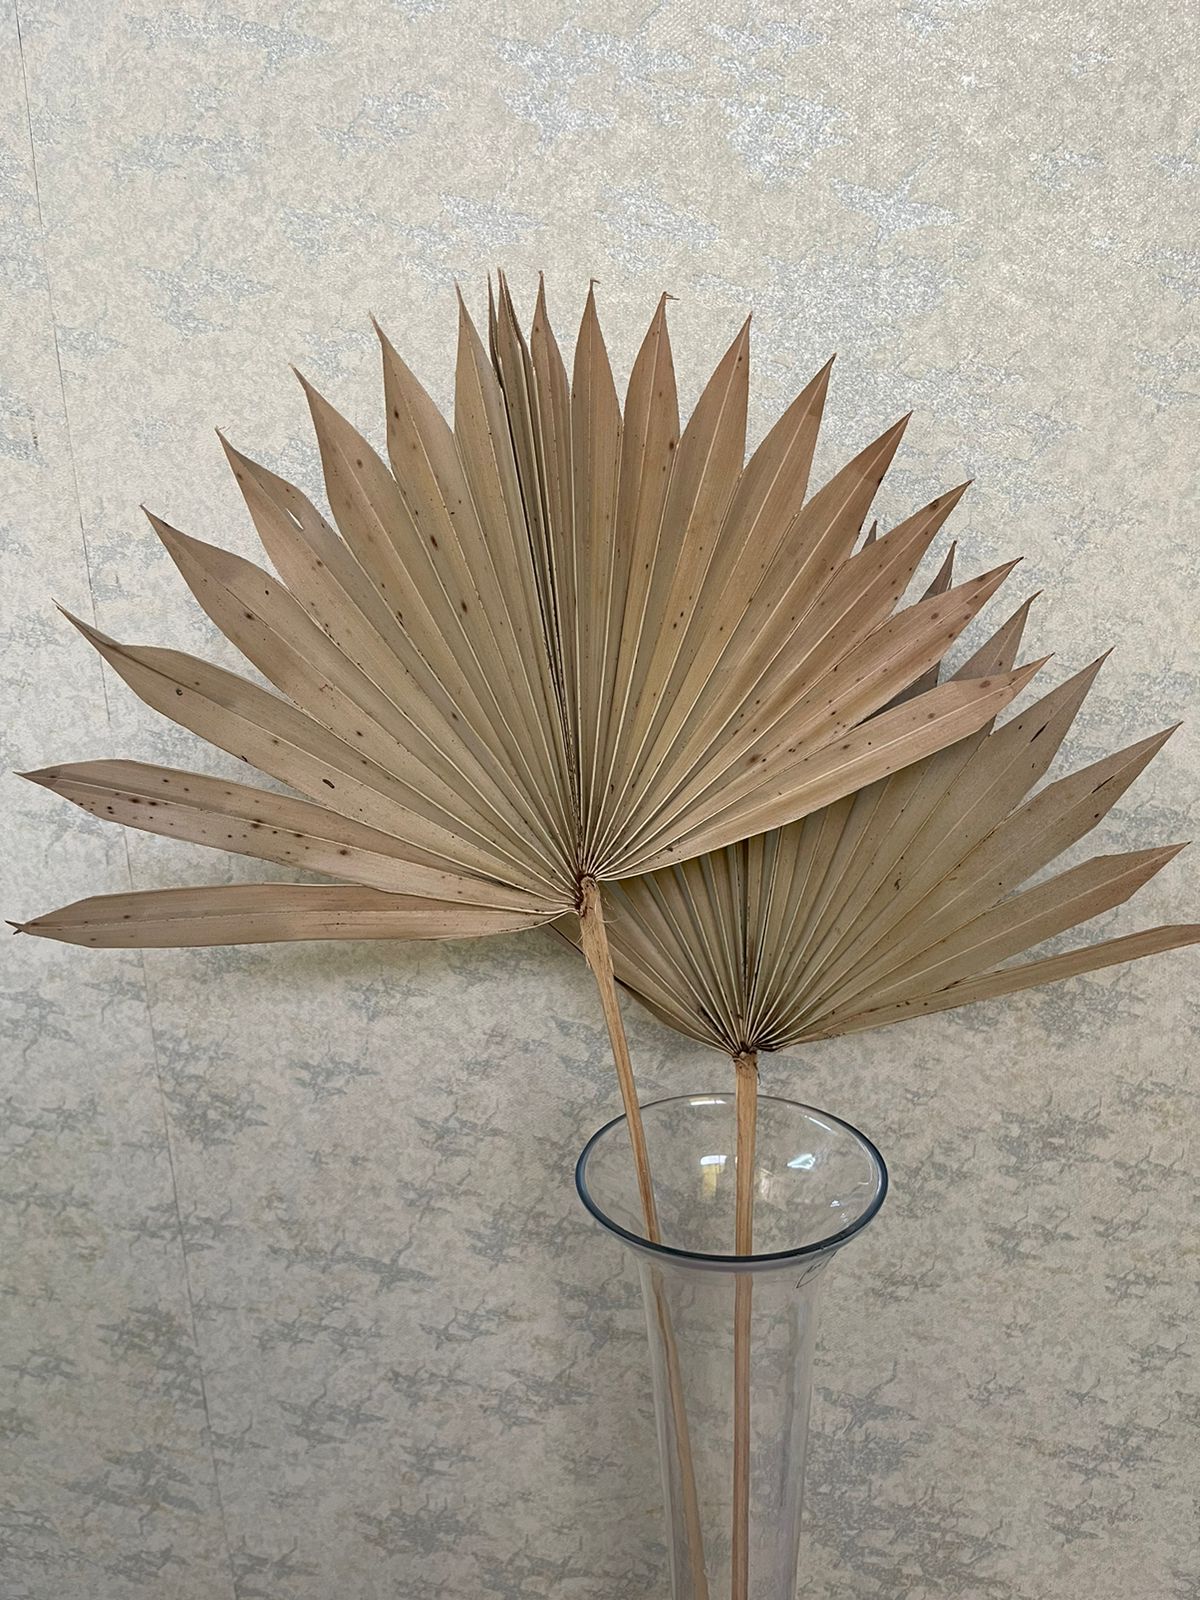 Dry lady palm leaf